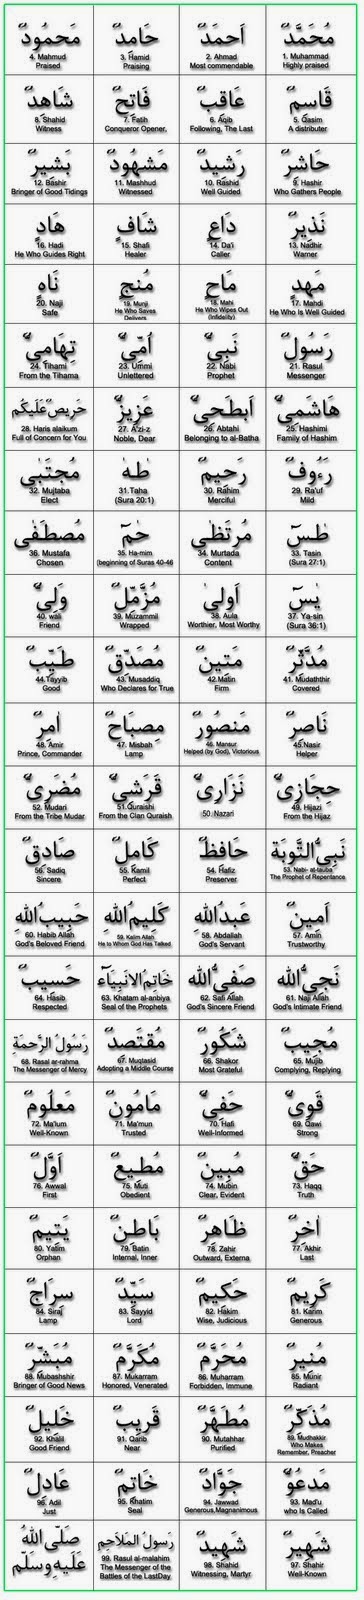 99 names of Hazrat Mohhamad (SAW)